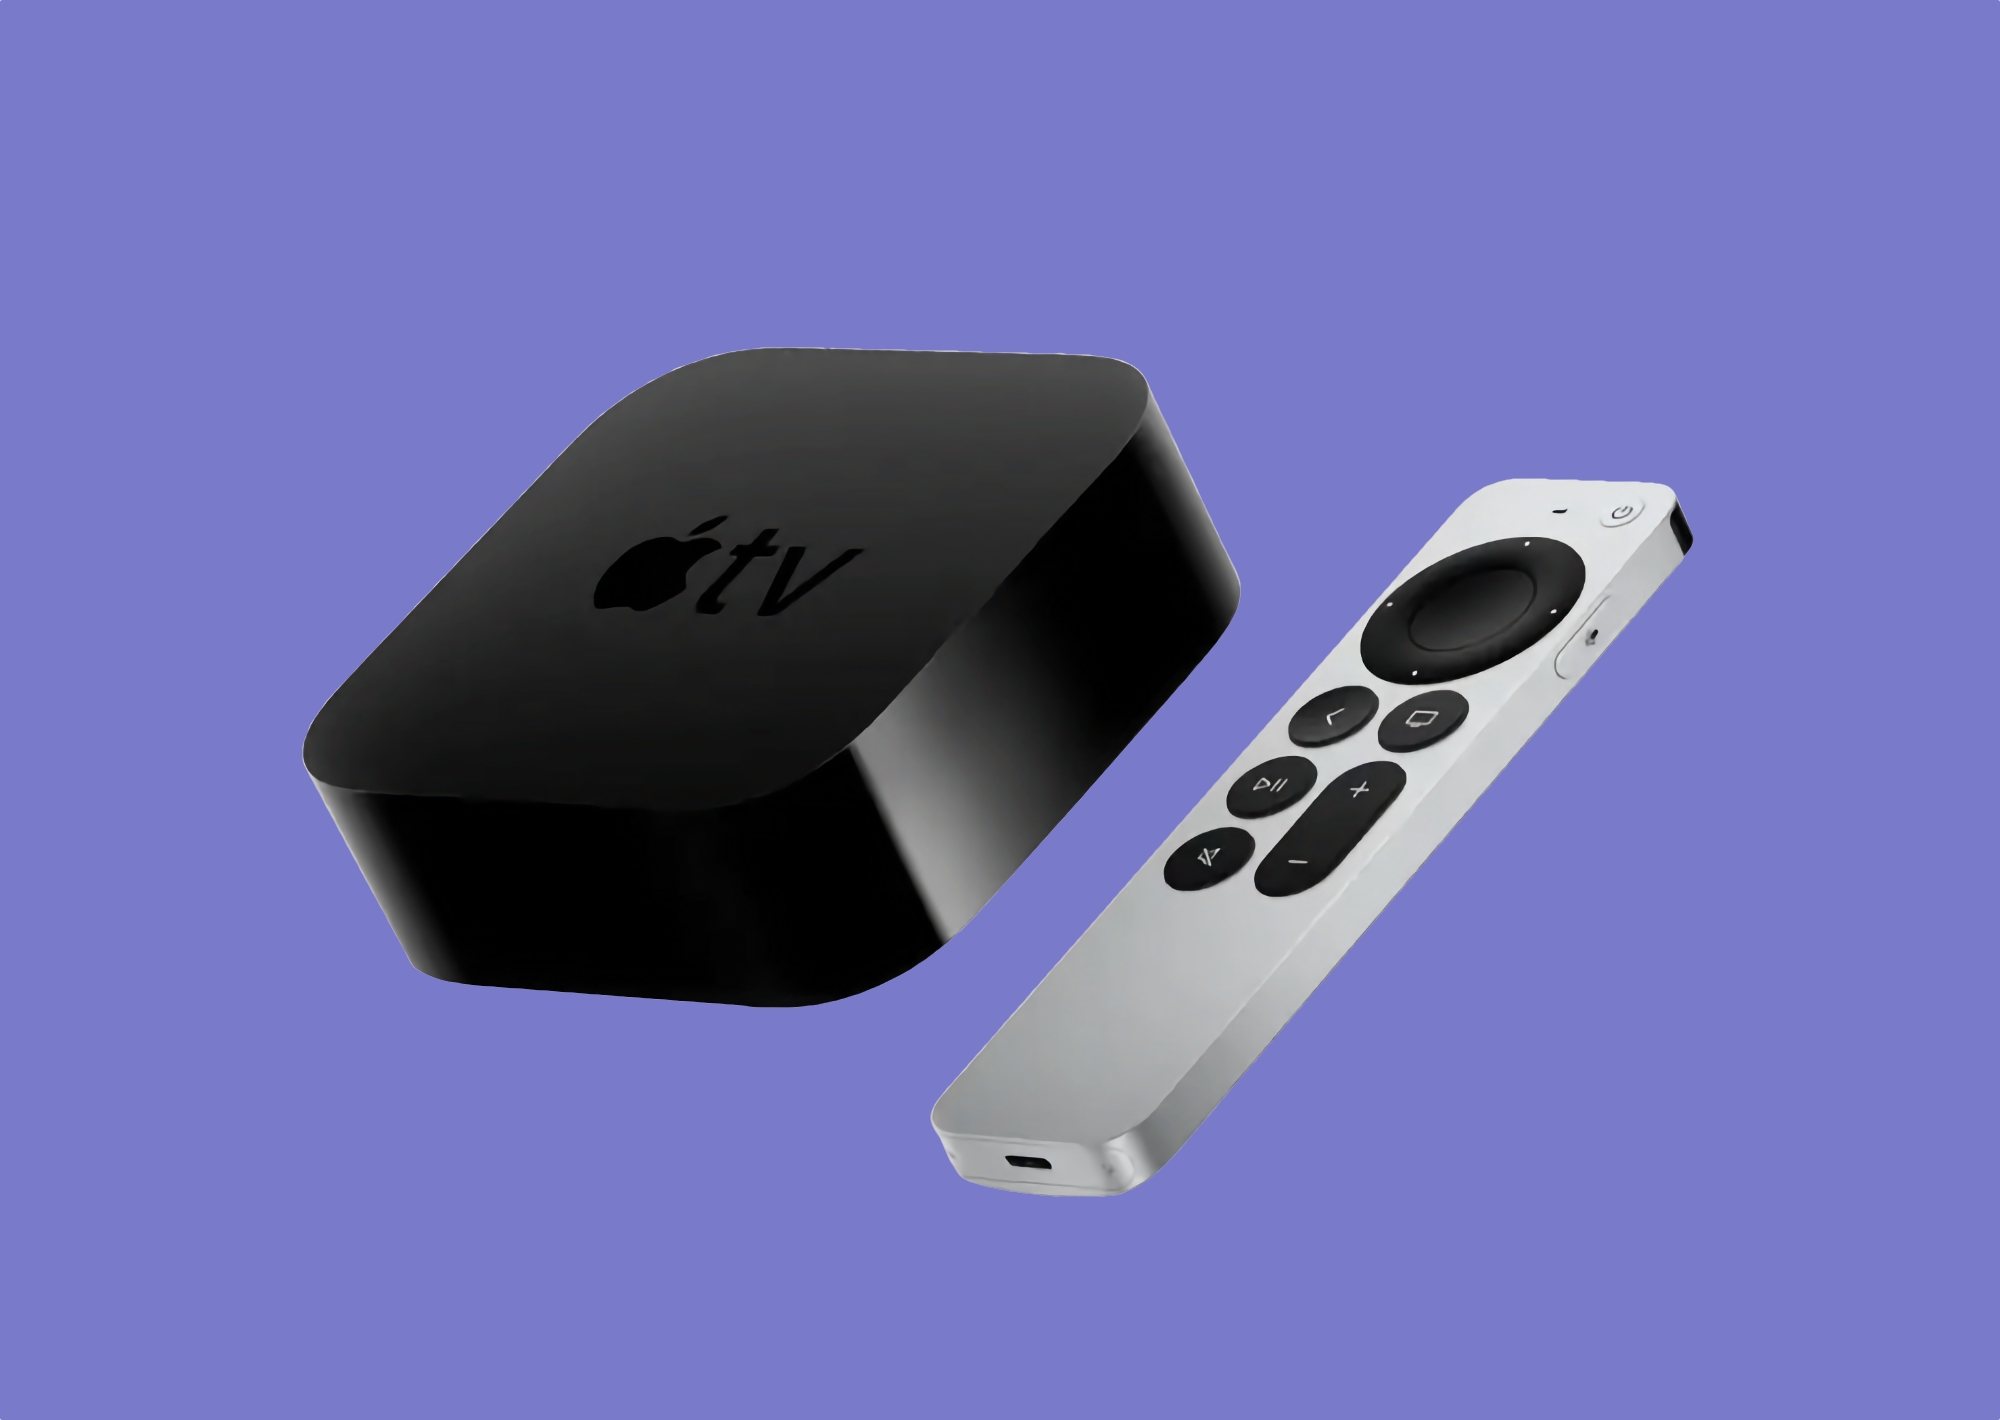 Apple TV 4K (2022) mit A15 Bionic Chip, USB Typ-C, Ethernet, HDR10+ Unterstützung und Preis ab 129 $ geht in den Verkauf